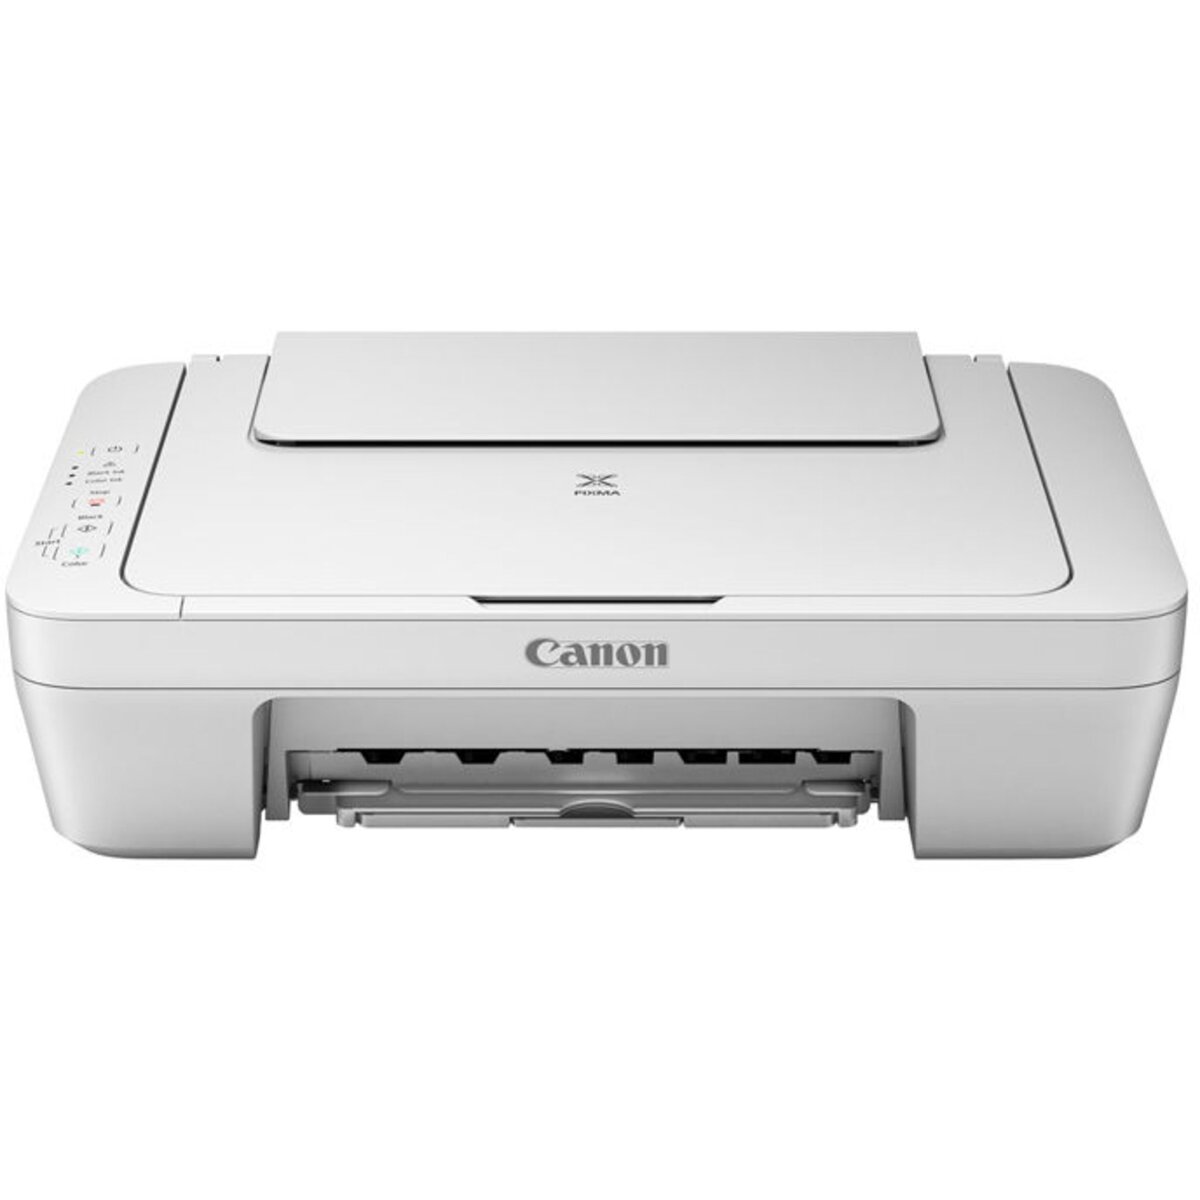 Принтер струйный canon pixma g1410 струйный. Принтер Canon mg2500. Принтер/сканер/струйное МФУ Canon PIXMA,. Canon PIXMA g540. Кэнон пиксма 540.